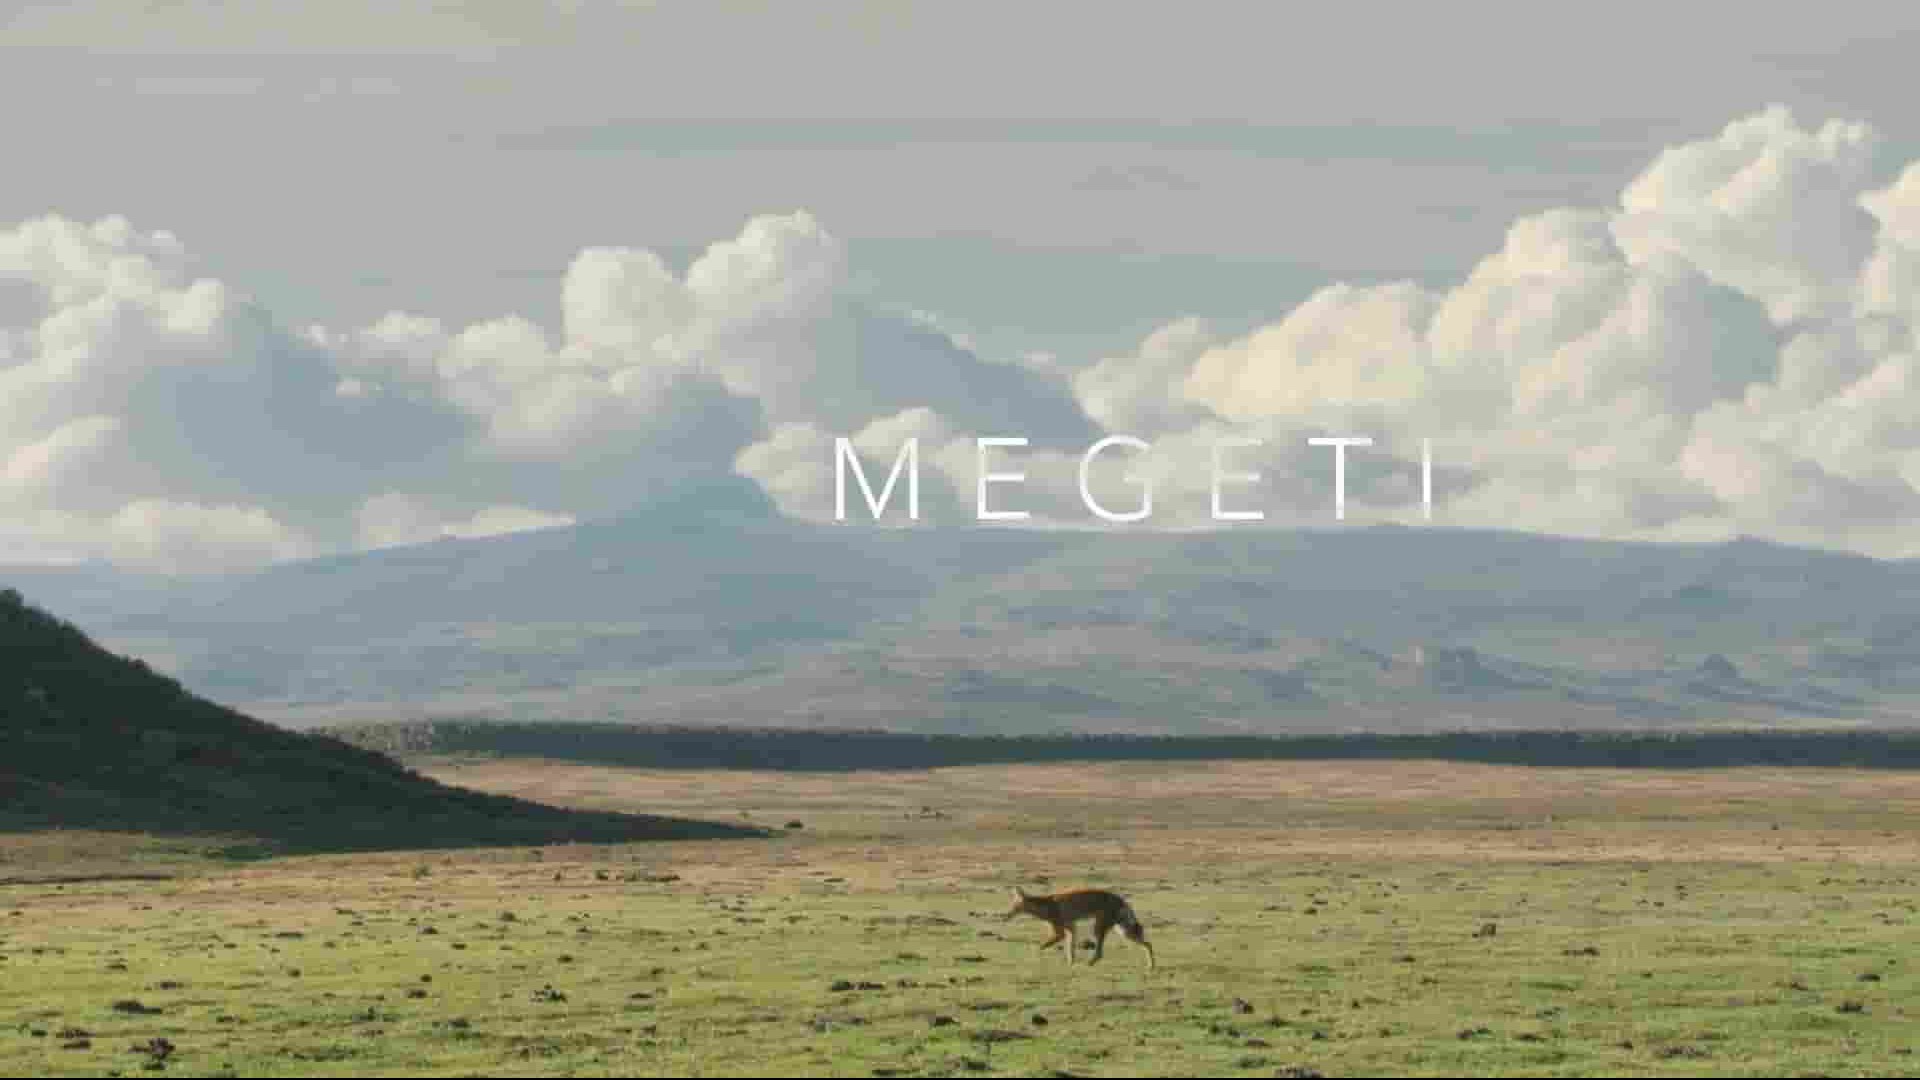 Terra Mater纪录片《Megeti：非洲孤狼 Megeti Africa